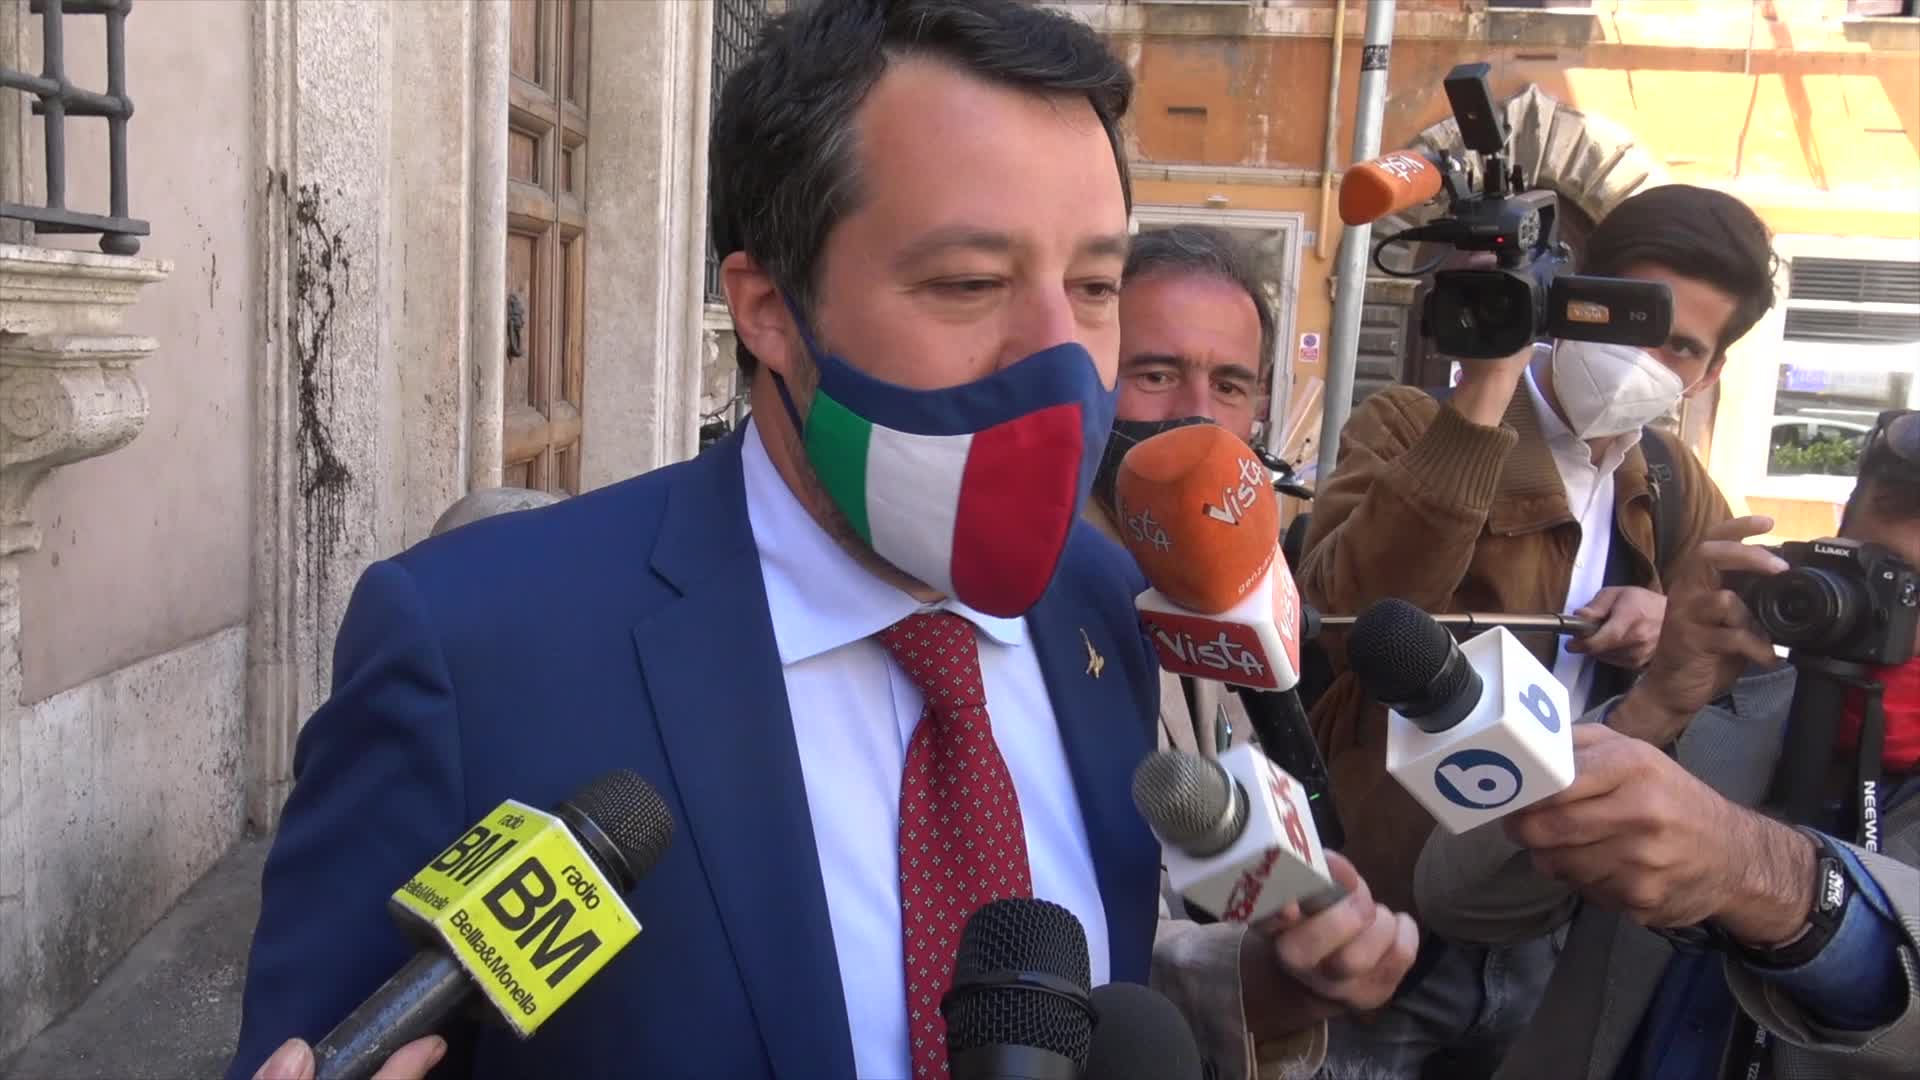 Copasir, Volpi lascia la presidenza. Salvini: "Mi aspetto altre dimissioni"